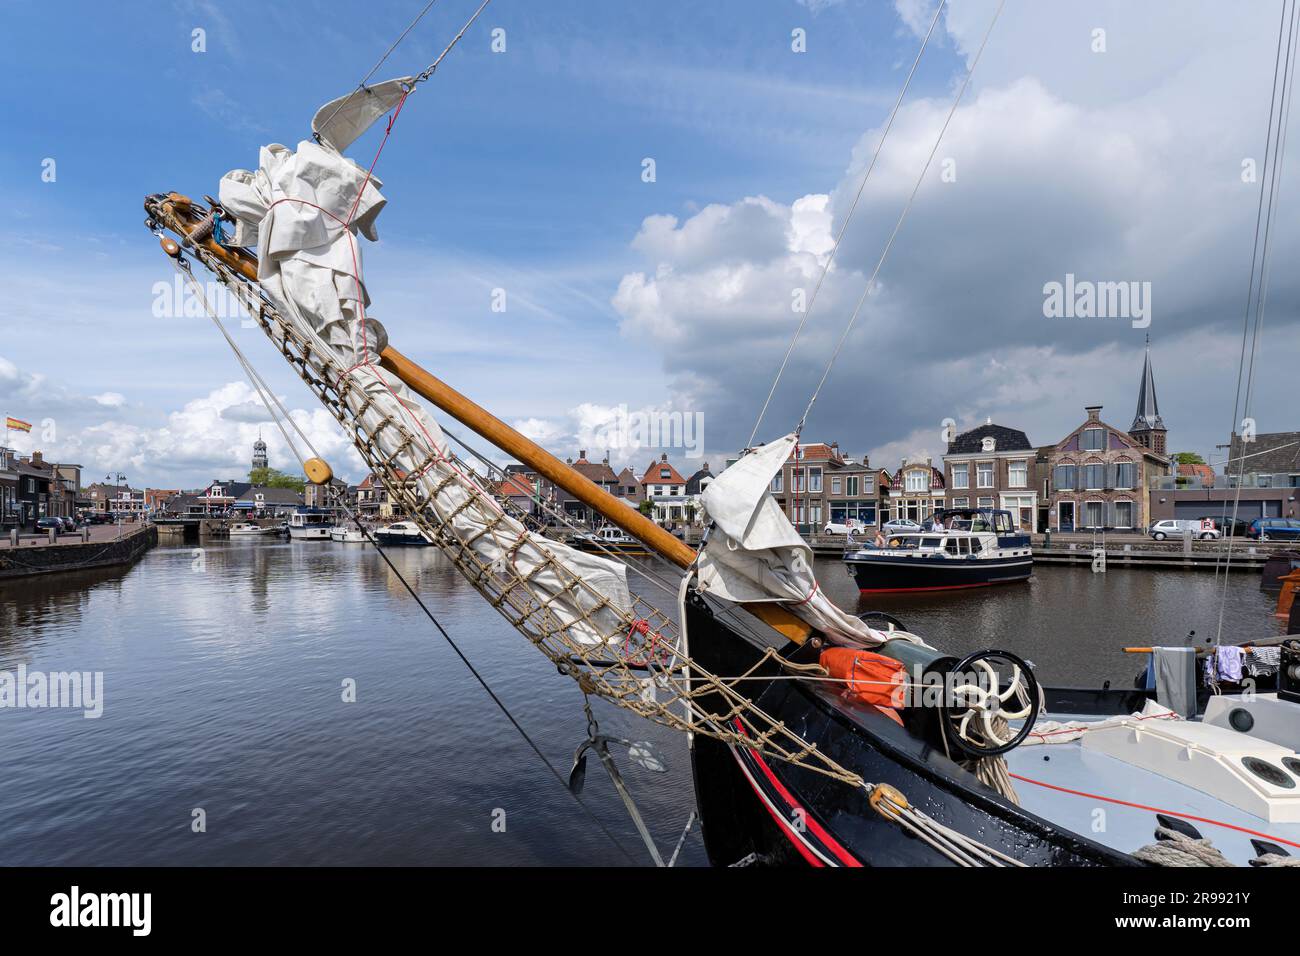 port of Lemmer, Netherlands Stock Photo